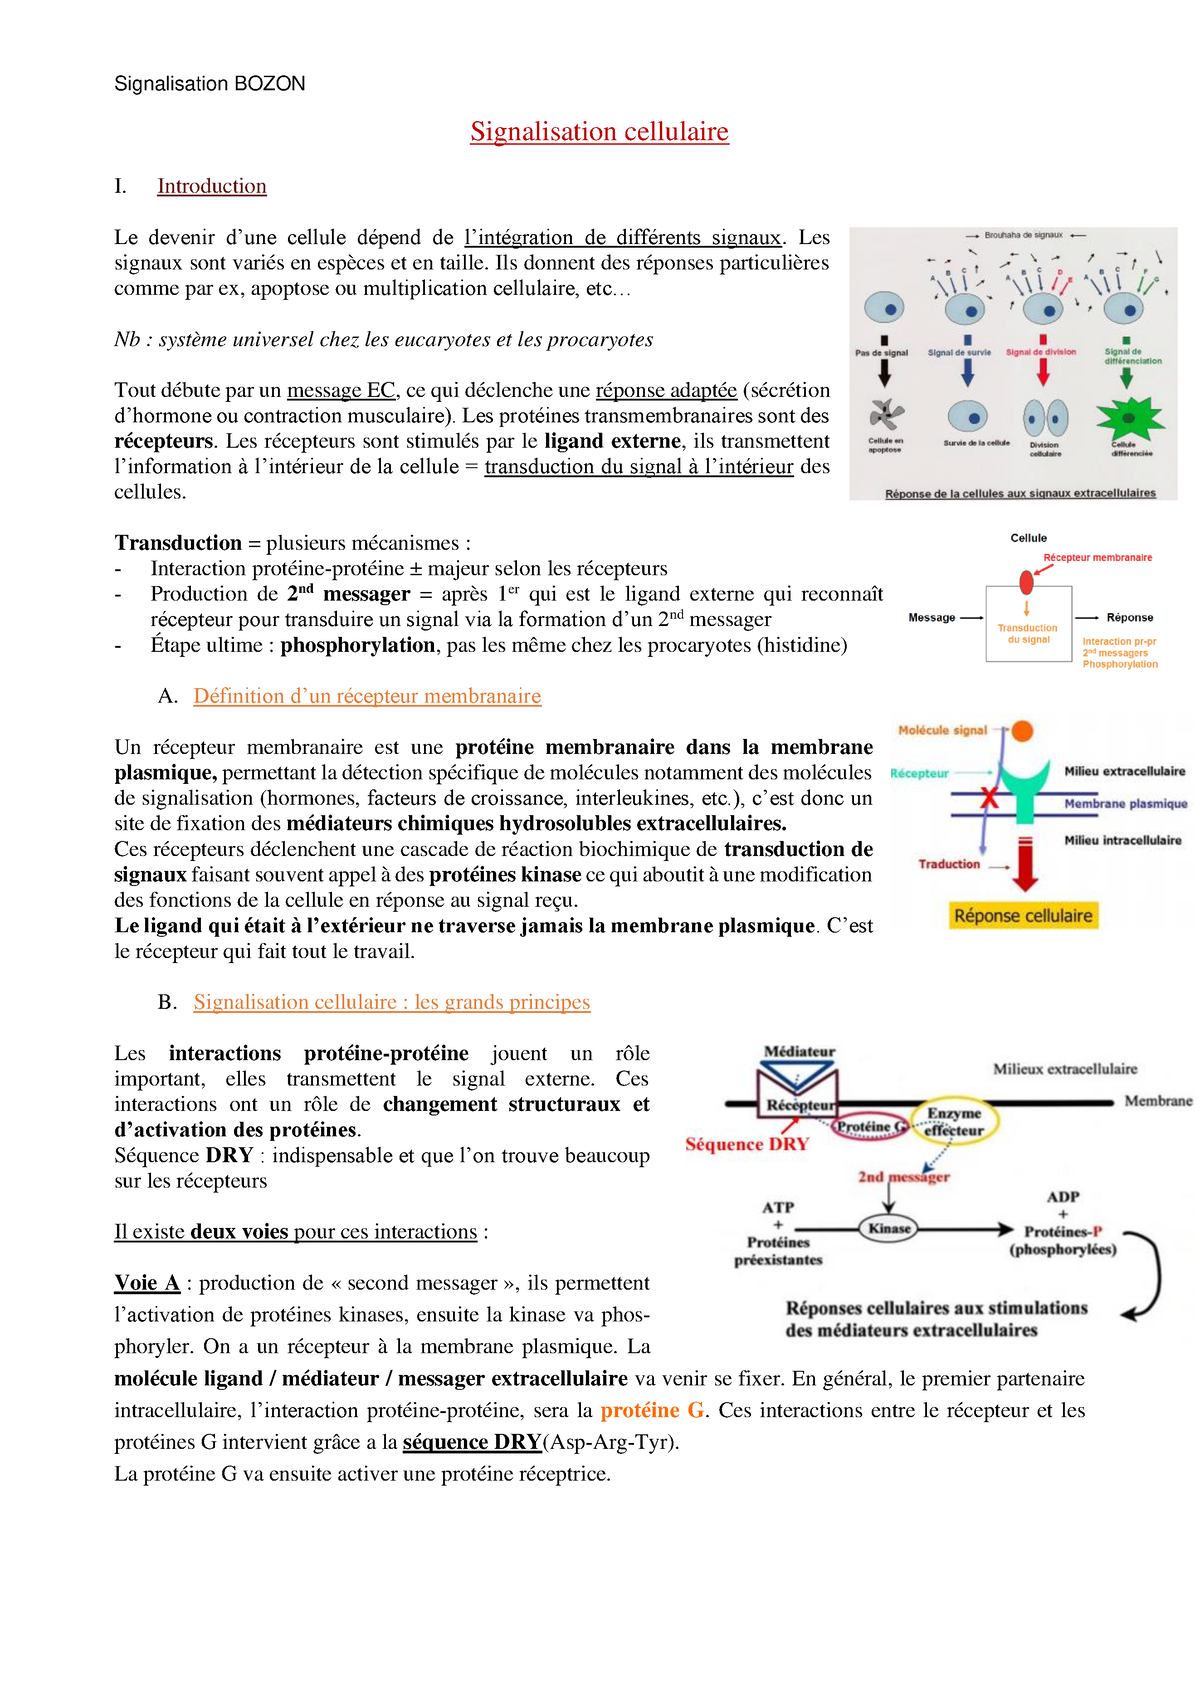 Dimérisation des récepteurs [11. Introduction à la signalisation cellulaire  [biologie cellulaire]]